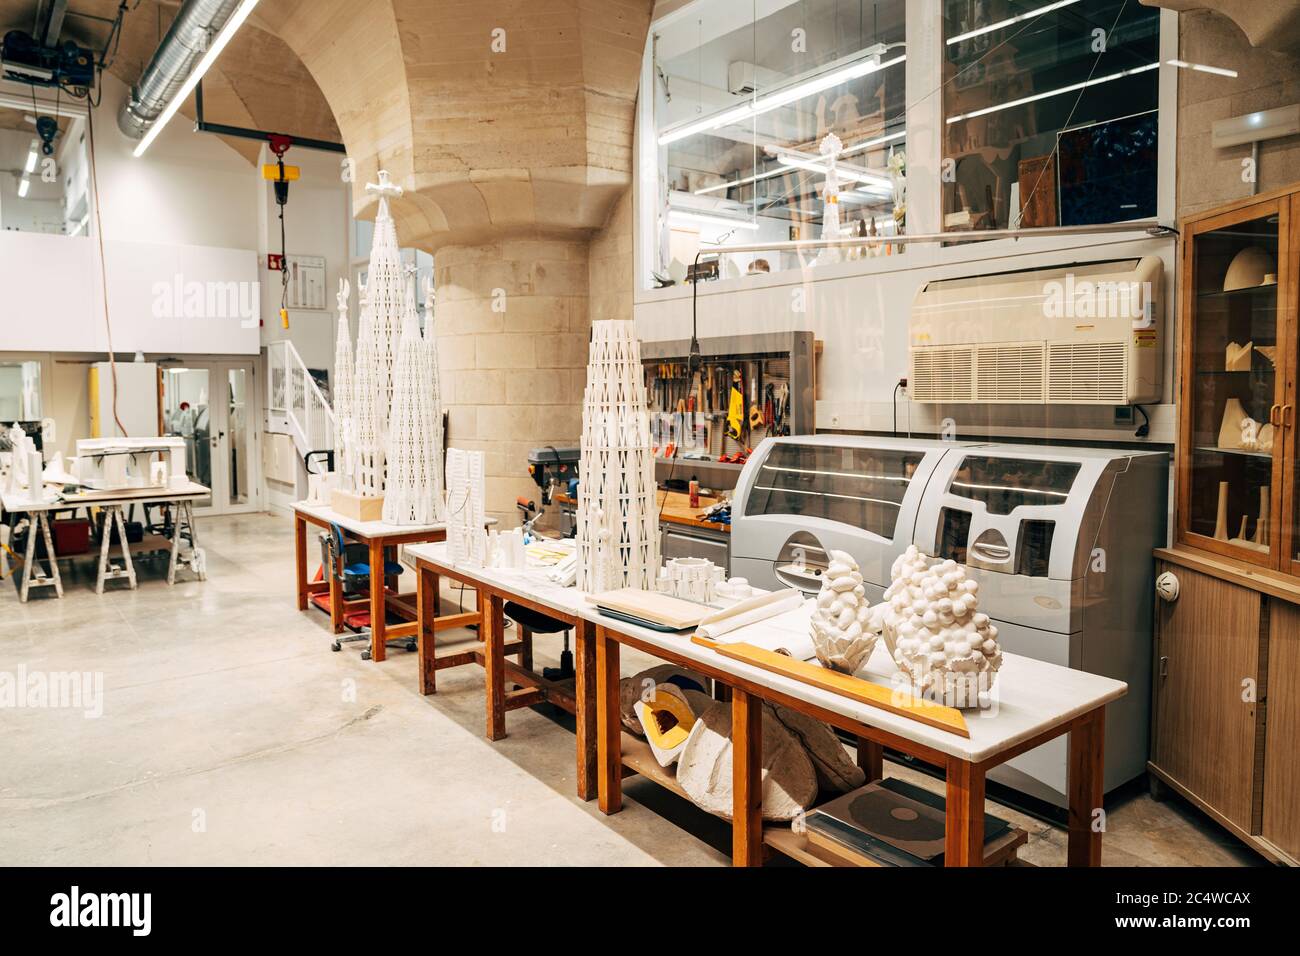 Barcelone, Espagne - 15 décembre 2019 : atelier d'architecte à la Sagrada Familia. Bureau et papier-maché avec images. Banque D'Images